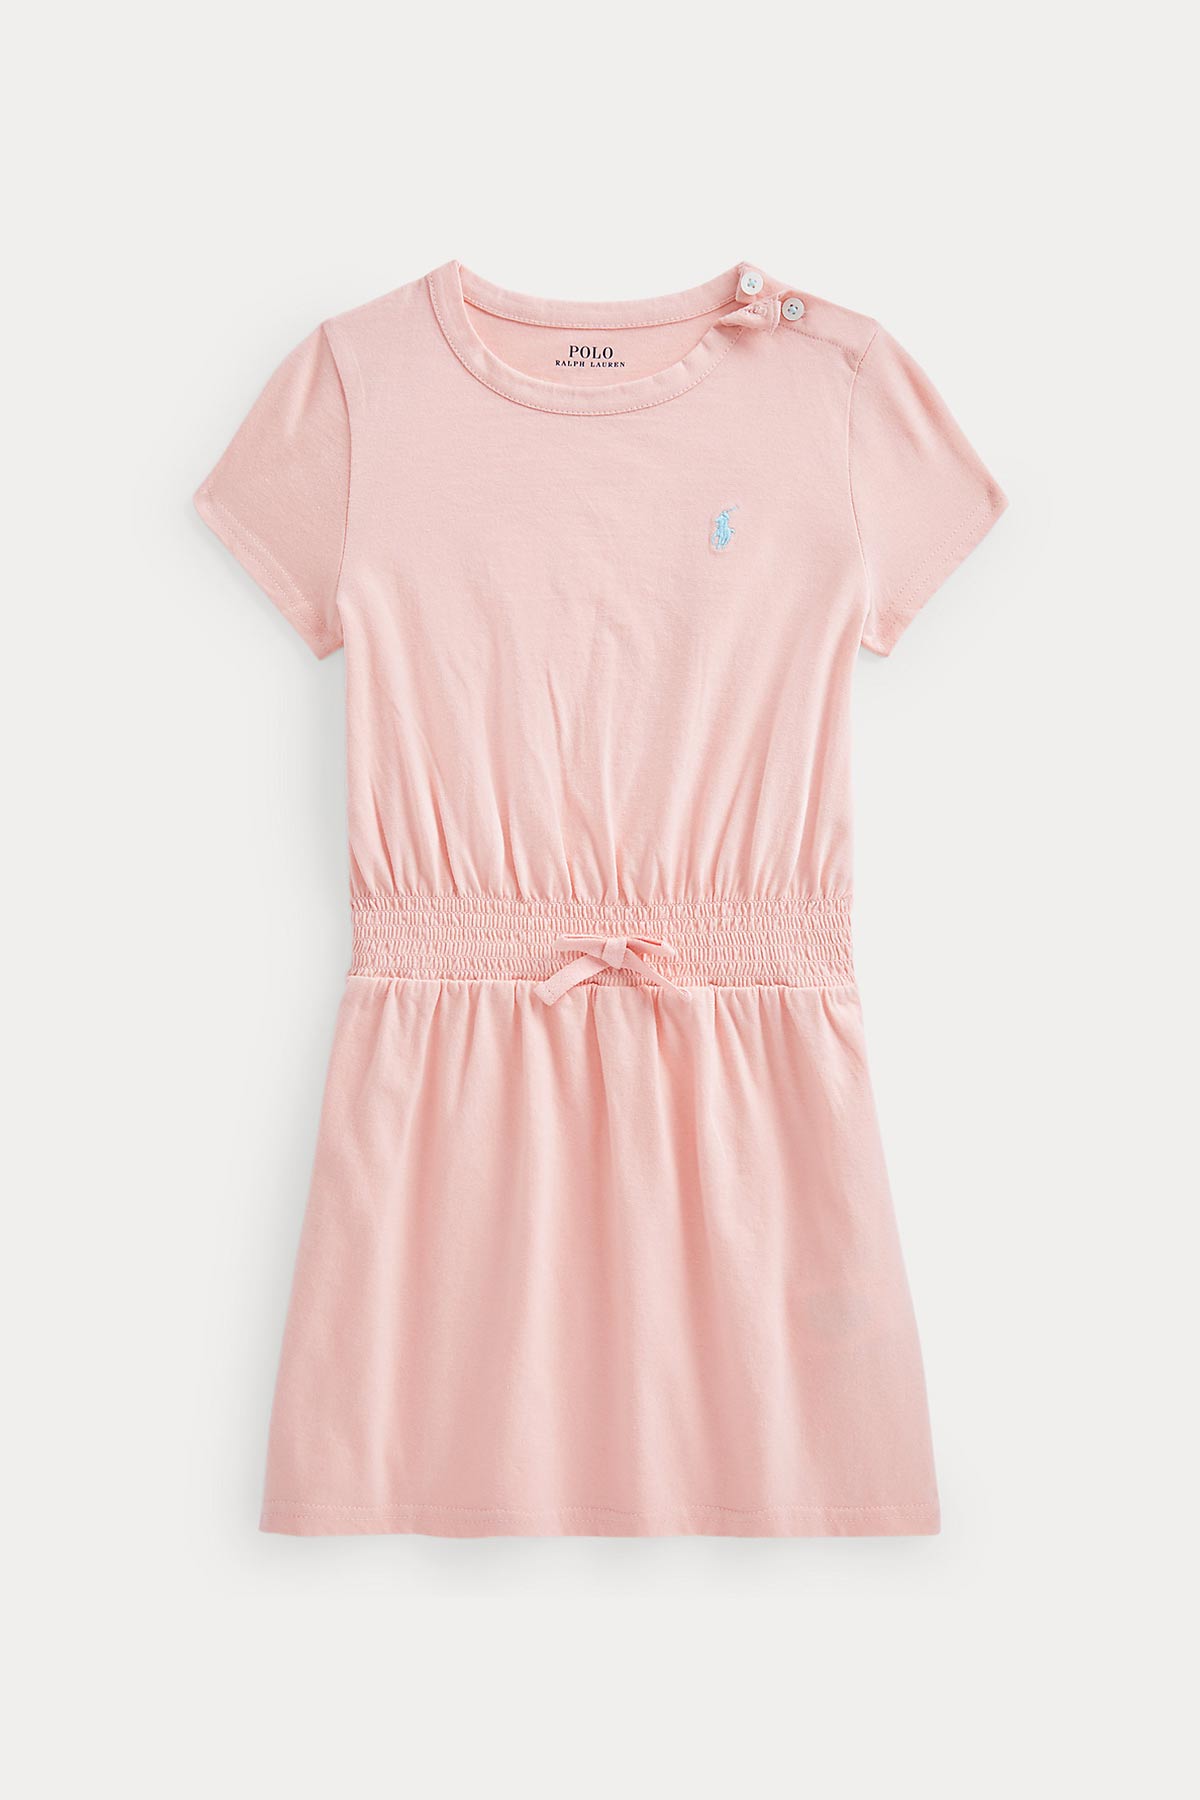 Polo Ralph Lauren 2-4 Yaş Kız Çocuk Belden Büzgülü Elbise-Libas Trendy Fashion Store